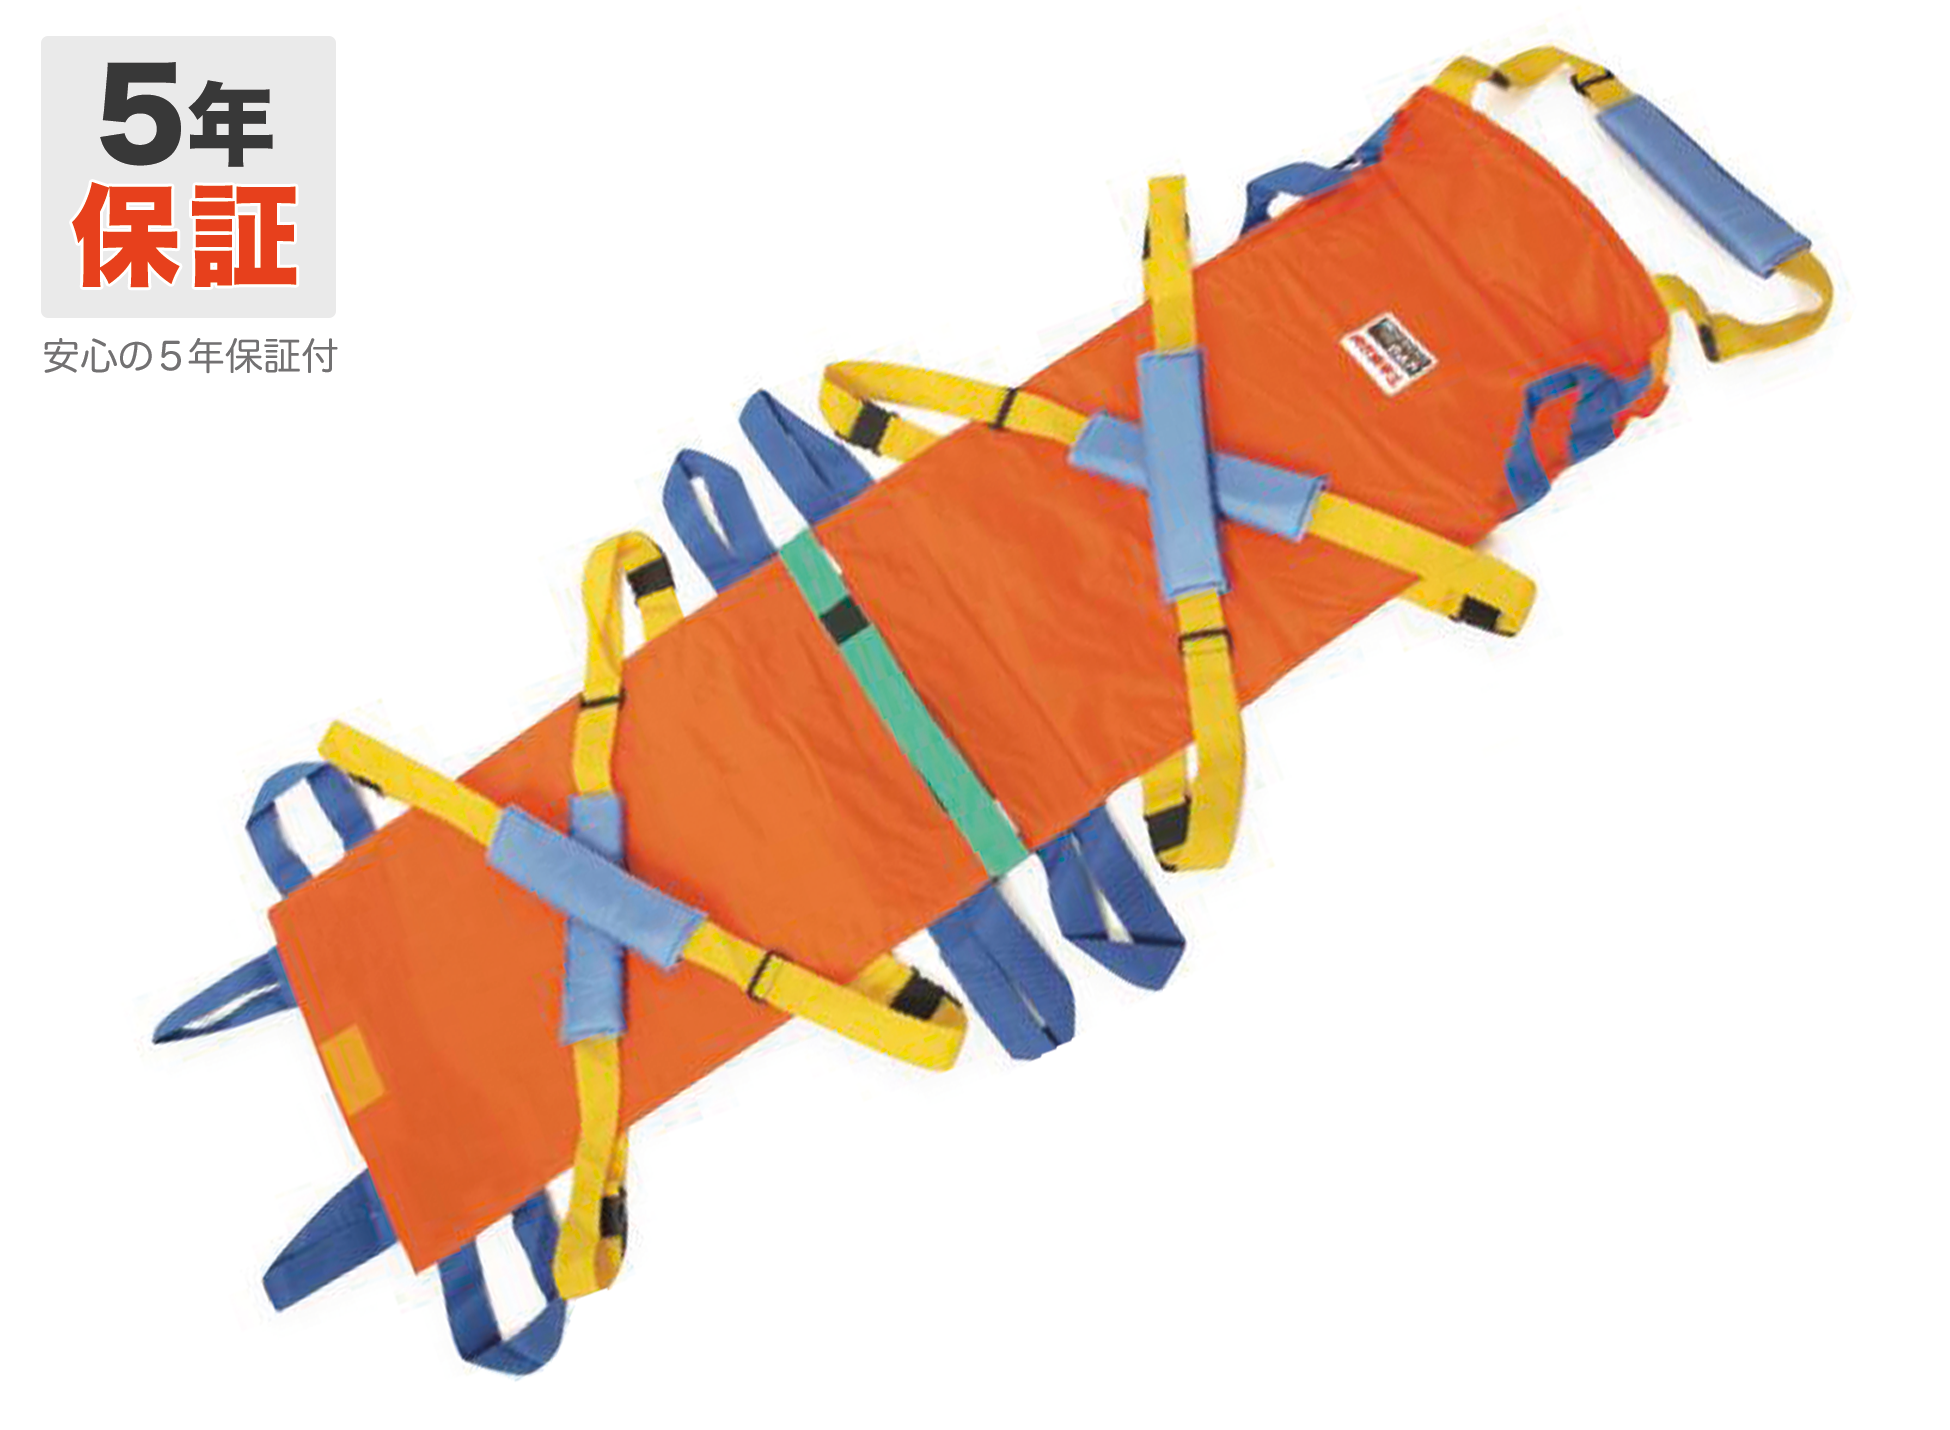 ベルカ DSB-6 救護用担架。防炎・防水布使用で災害時にも安心。ベルトを肩からかけて体全体で担ぐので、楽に搬送できます。1～6人で搬送でき